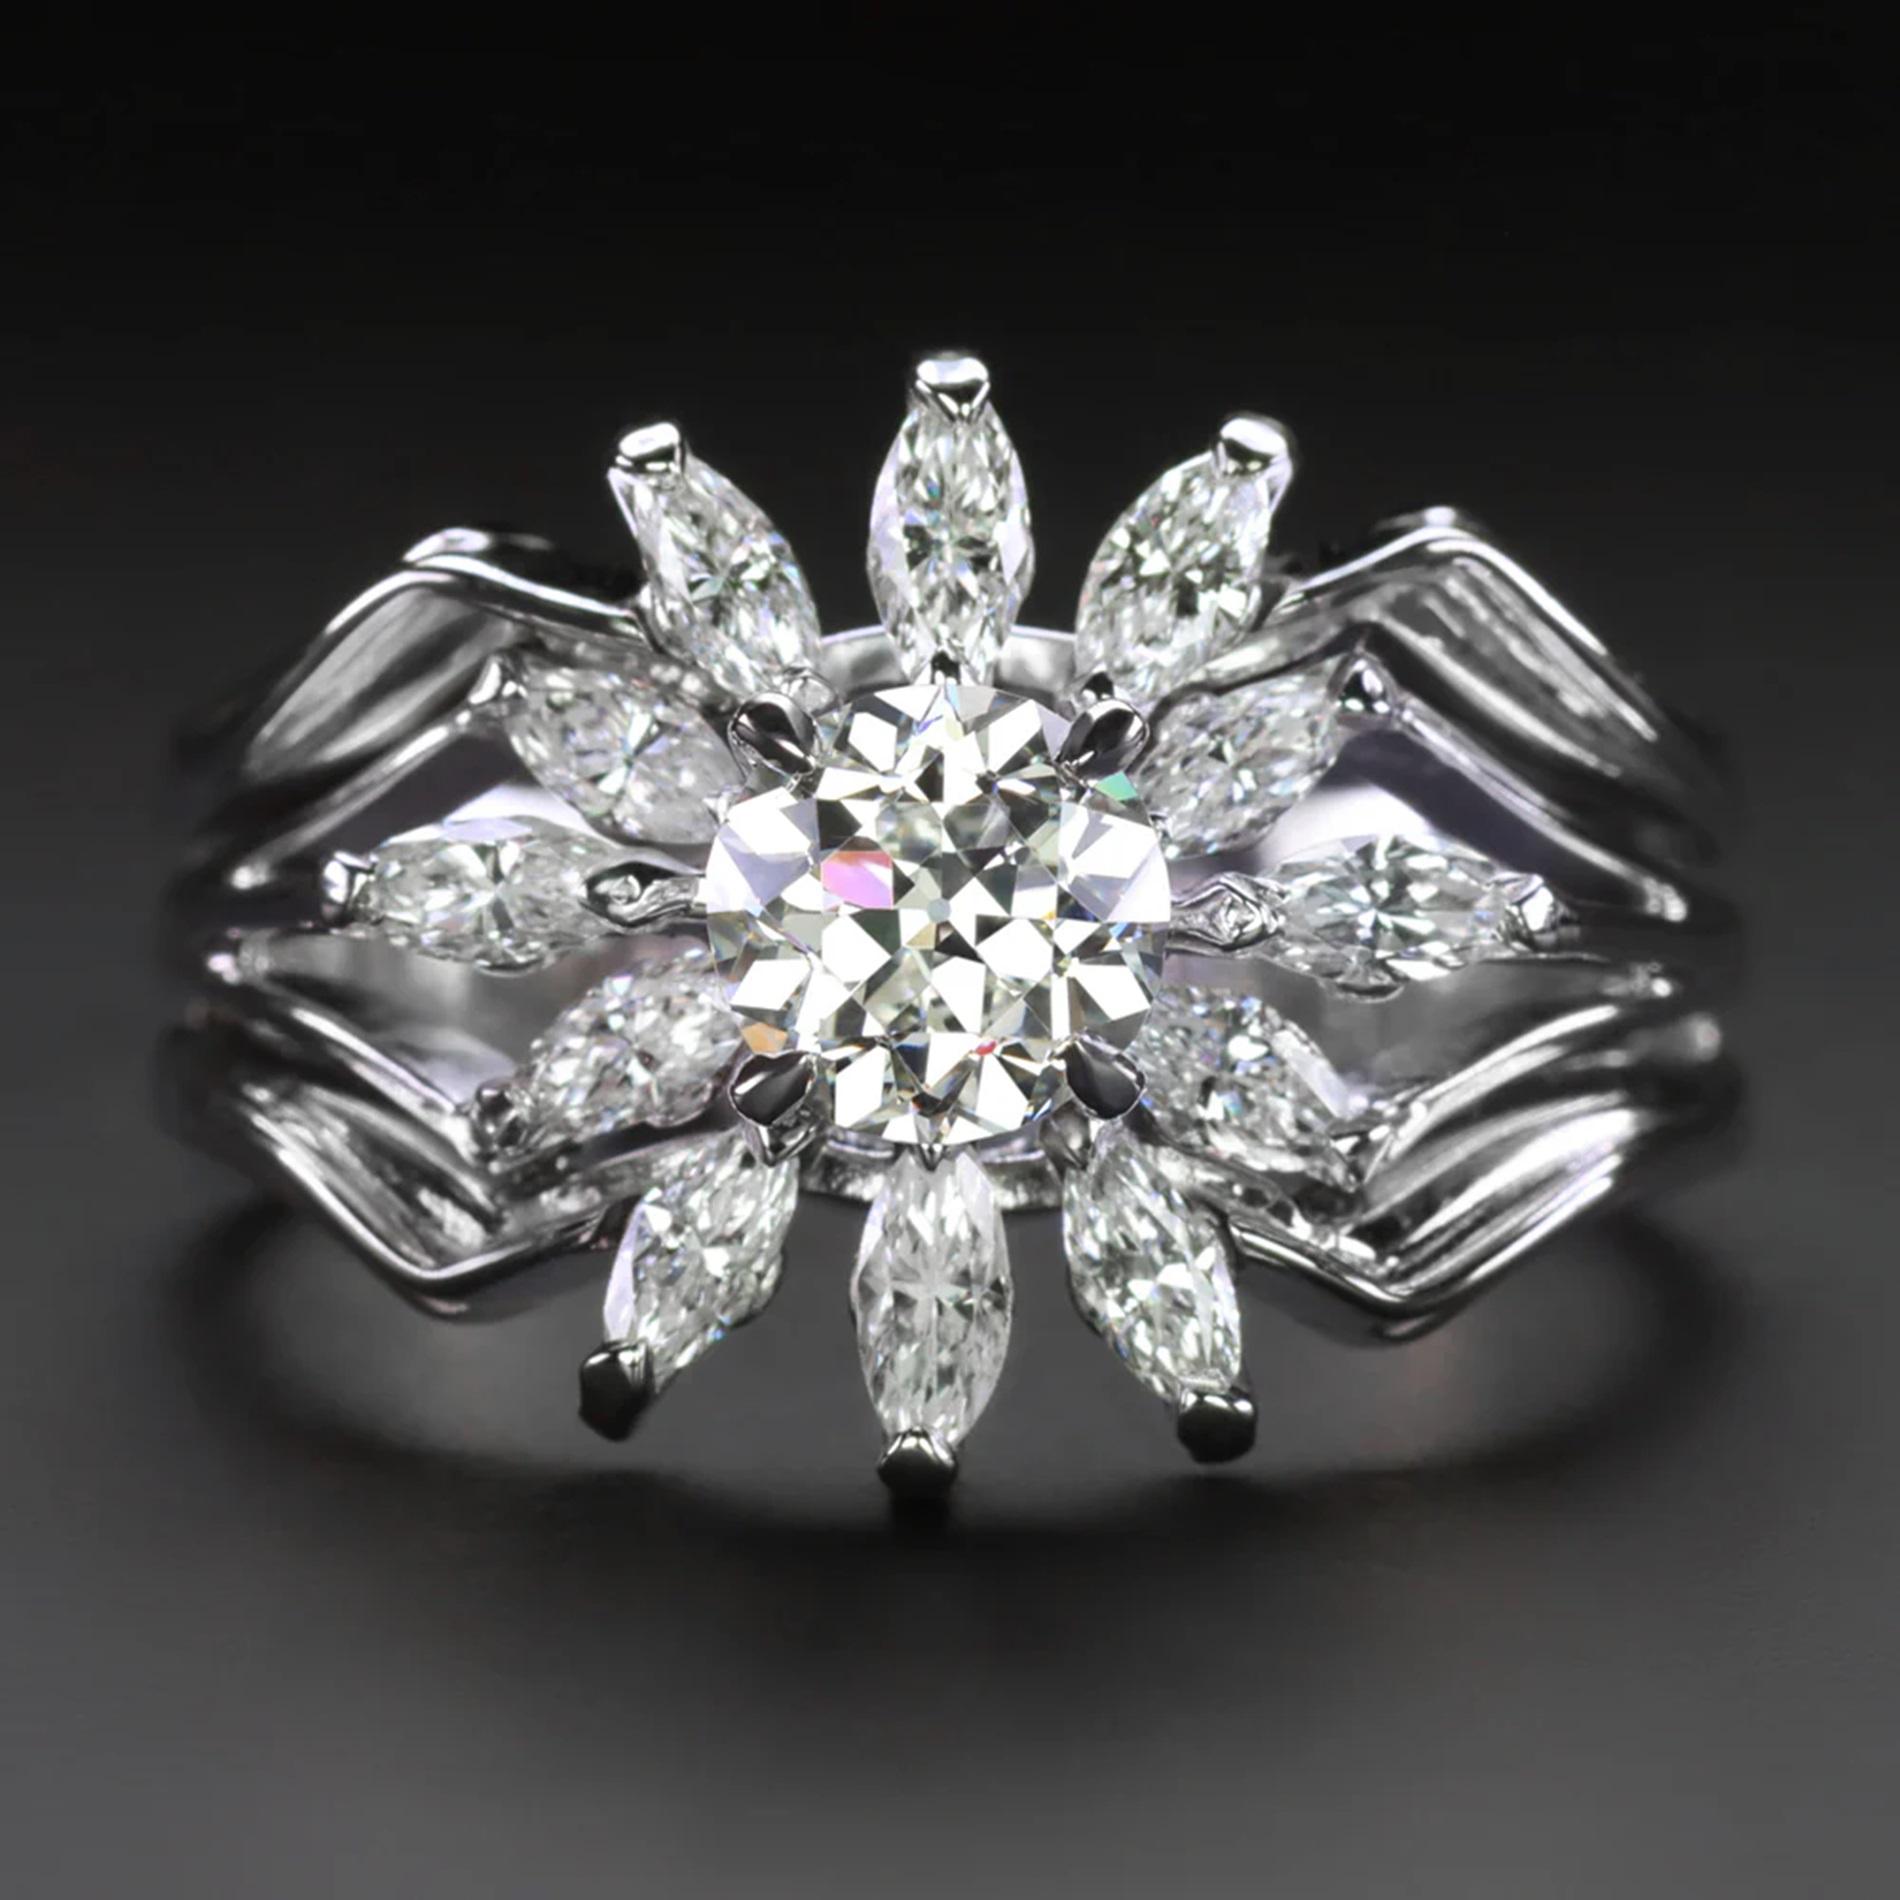 Wir präsentieren einen faszinierenden Vintage-Diamantring mit einem bezaubernden Diamanten im alten europäischen Schliff in der Mitte, der von einem Halo aus exquisiten Diamanten im Marquise-Schliff umrahmt wird.

Hervorzuhebende Merkmale sind:

Ein